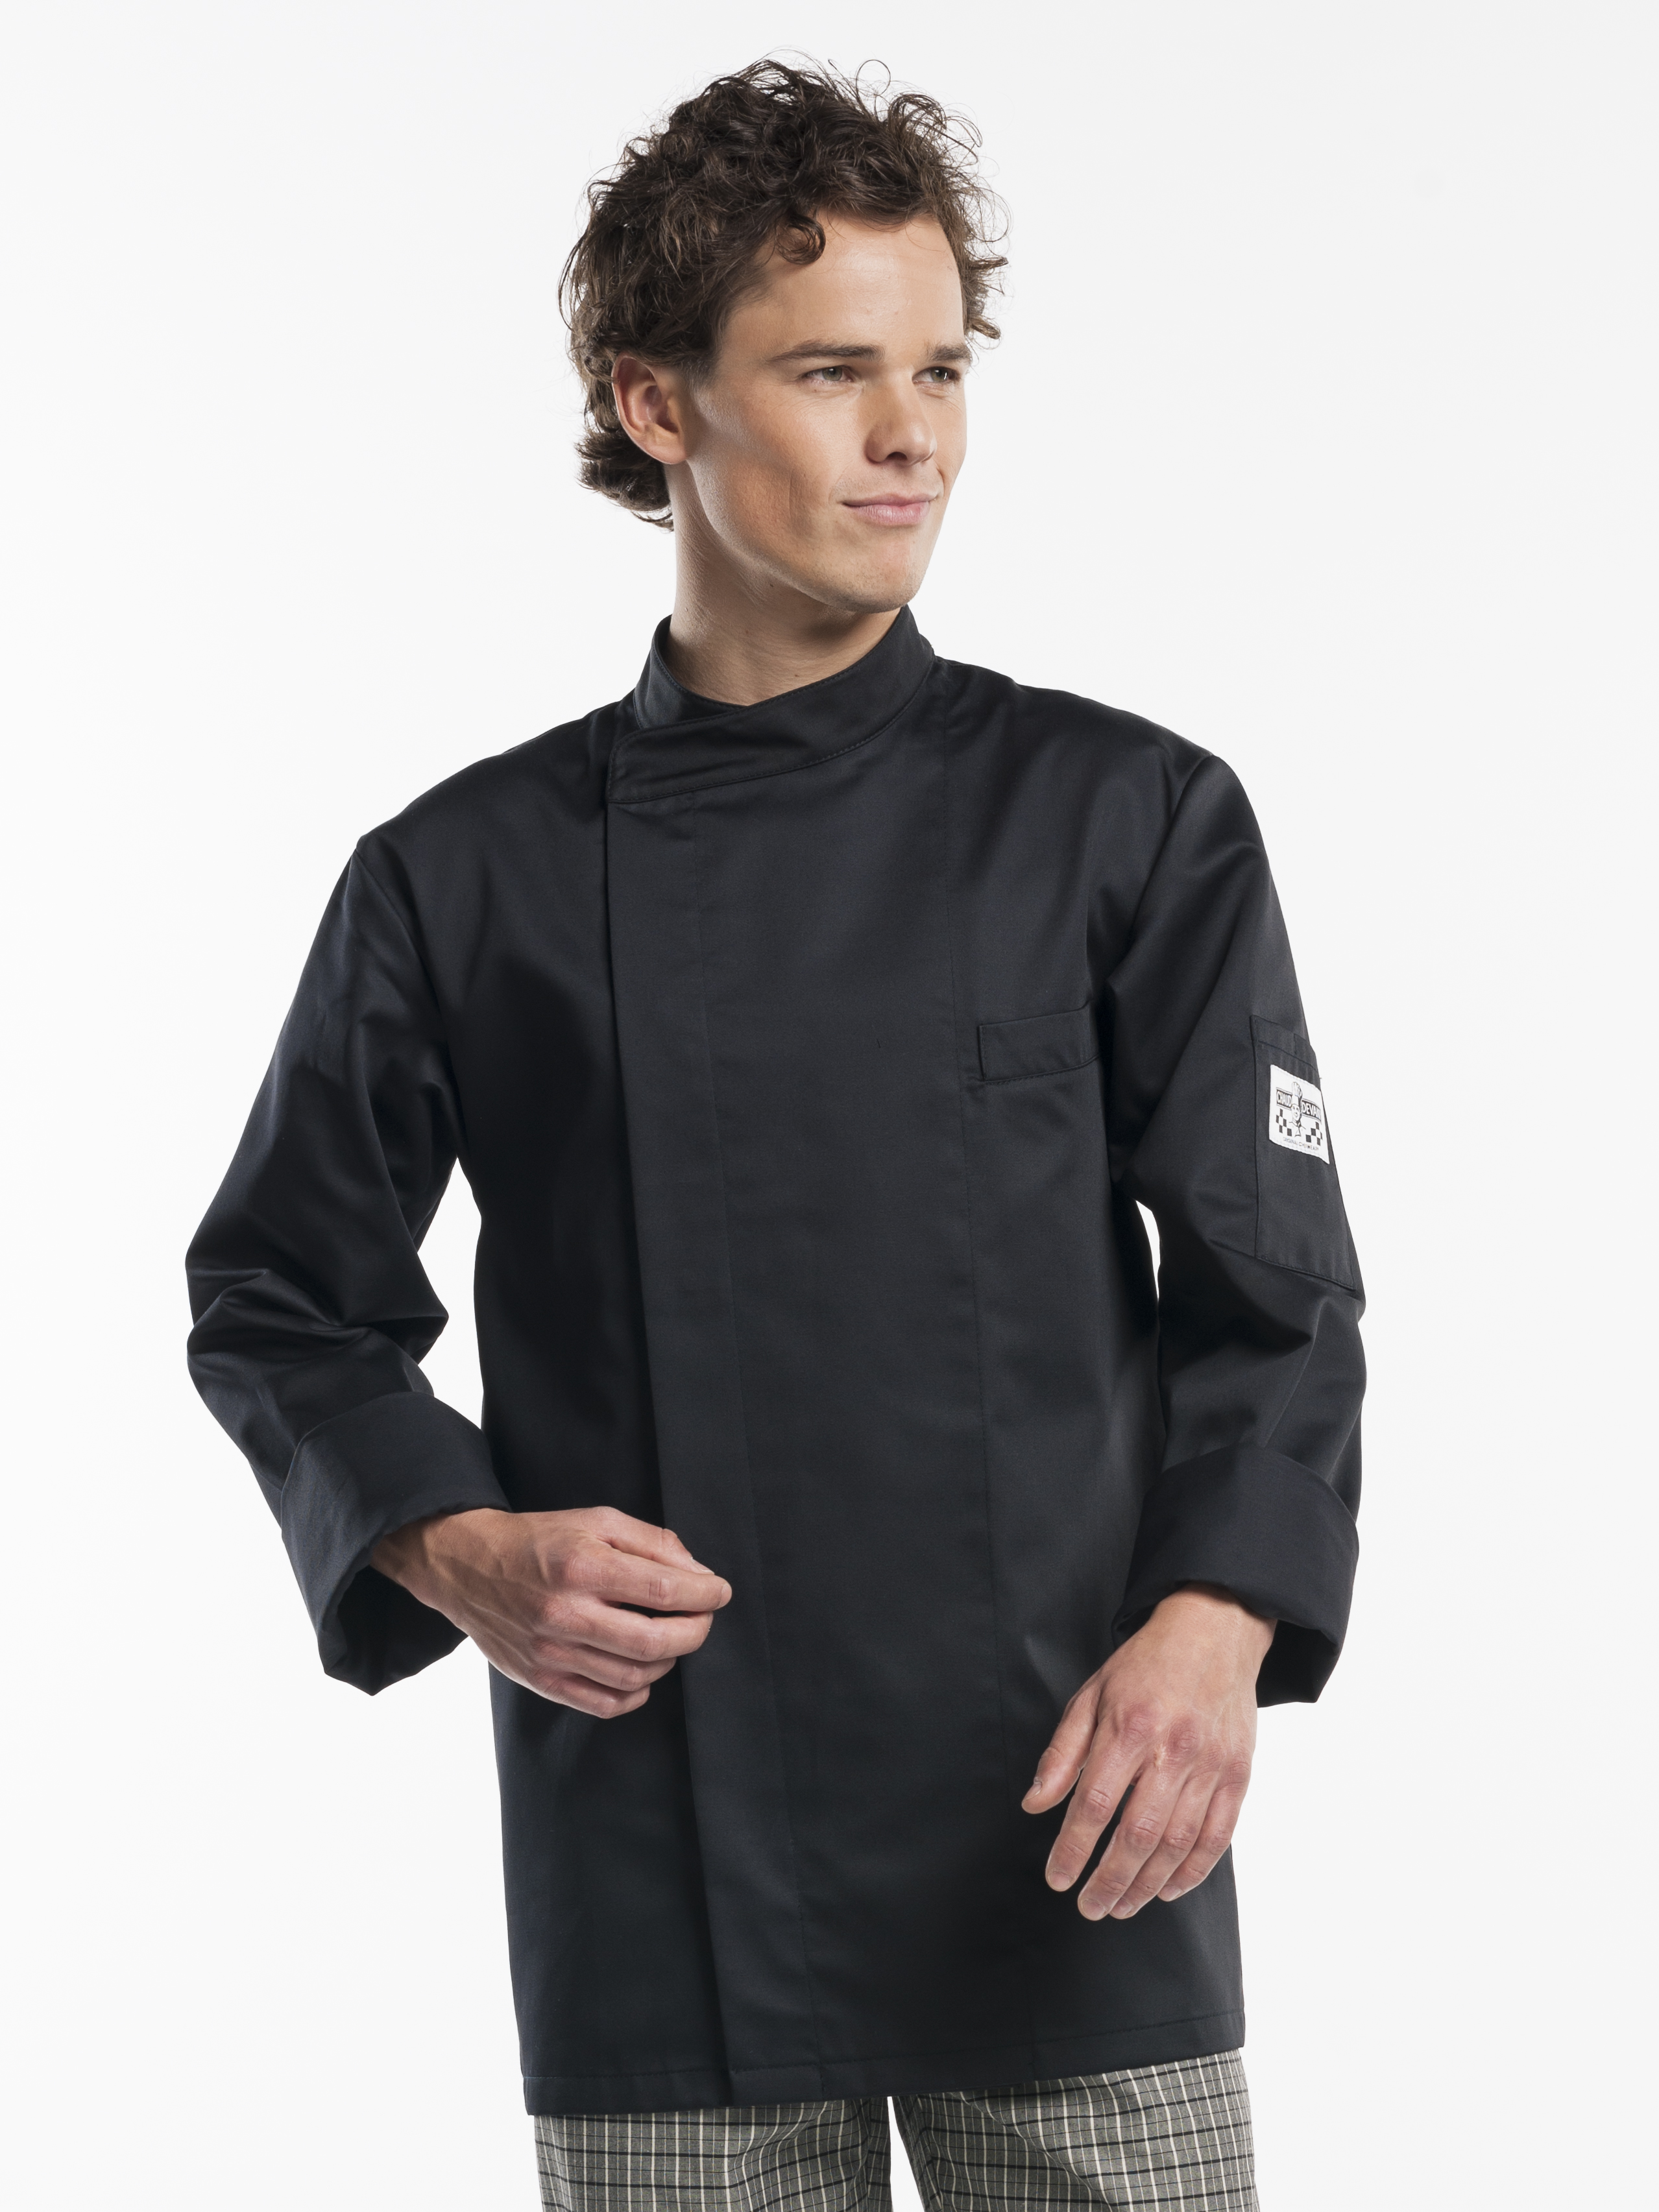 67294 Chef jacket bacio zwart maat xxl